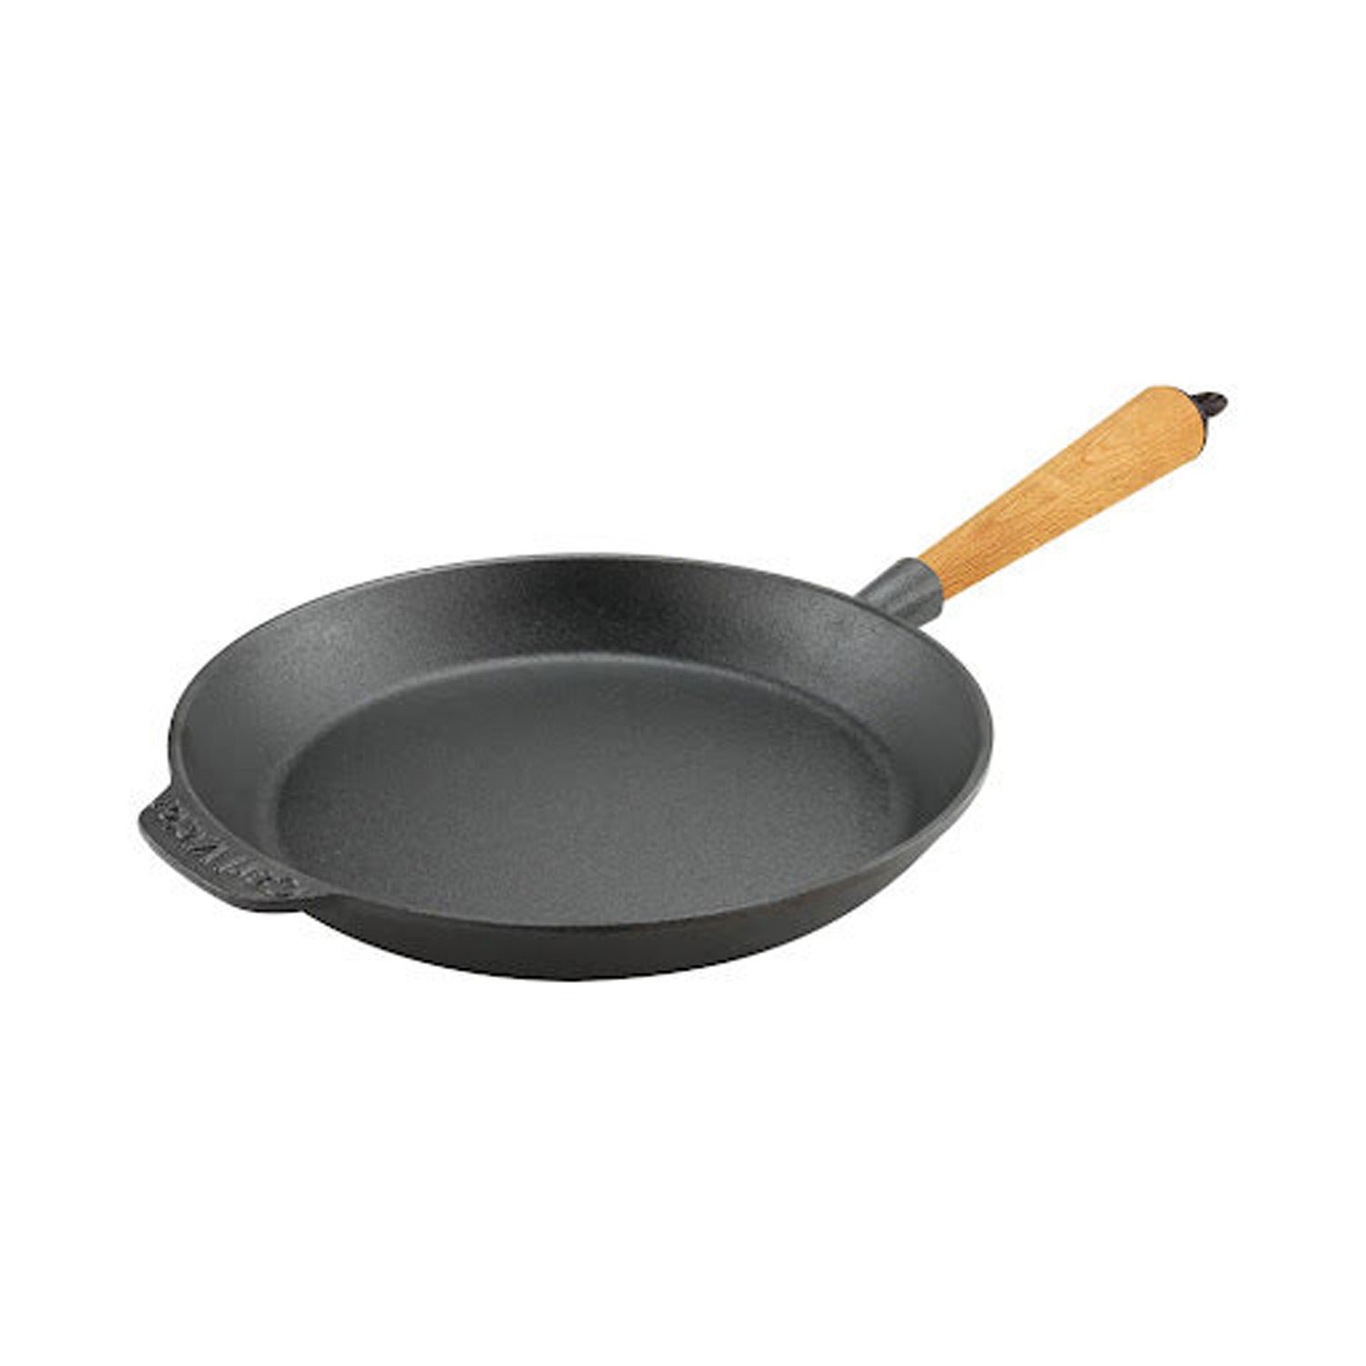 Frying Pan 24 cm With Handle In Beech